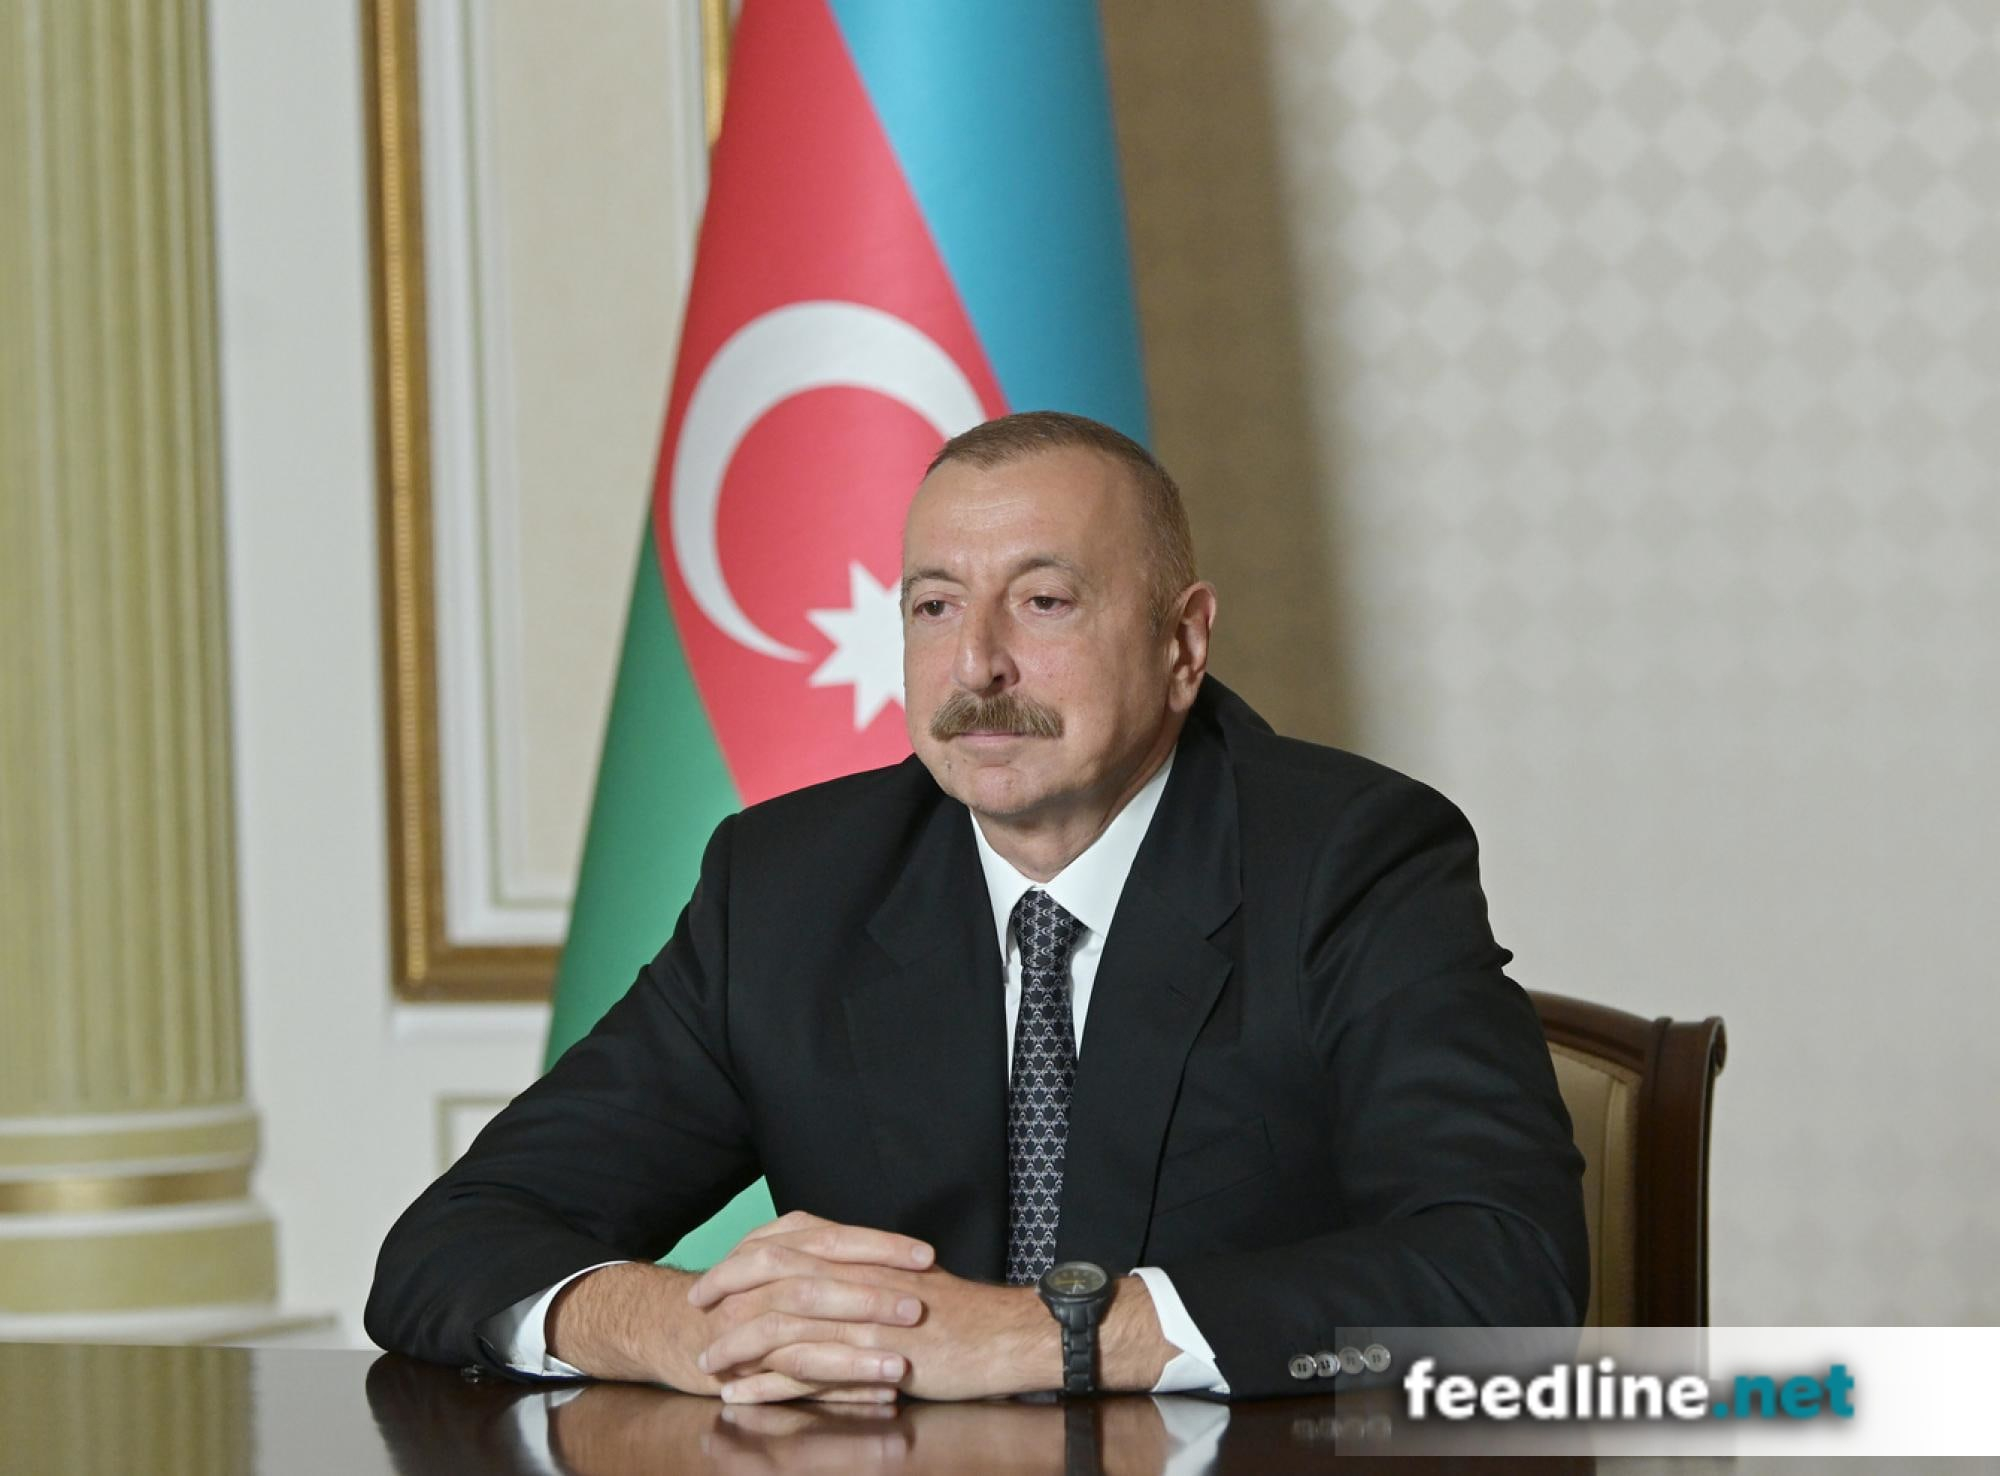 Правление и учредители Общества дружбы Египет-Азербайджан поздравили Ильхама Алиева